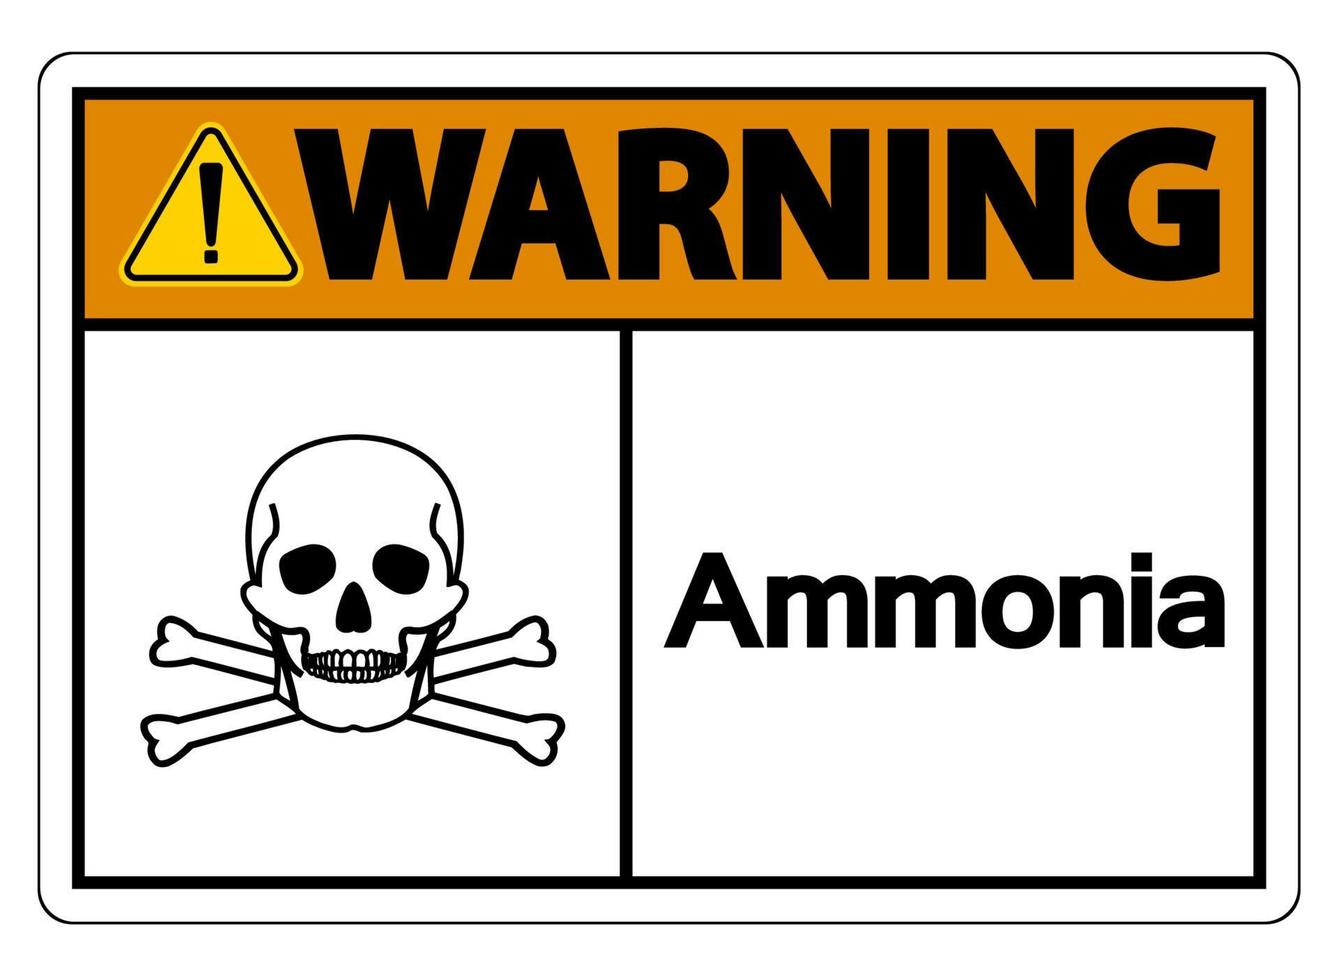 varning ammoniak symbol tecken på vit bakgrund vektor